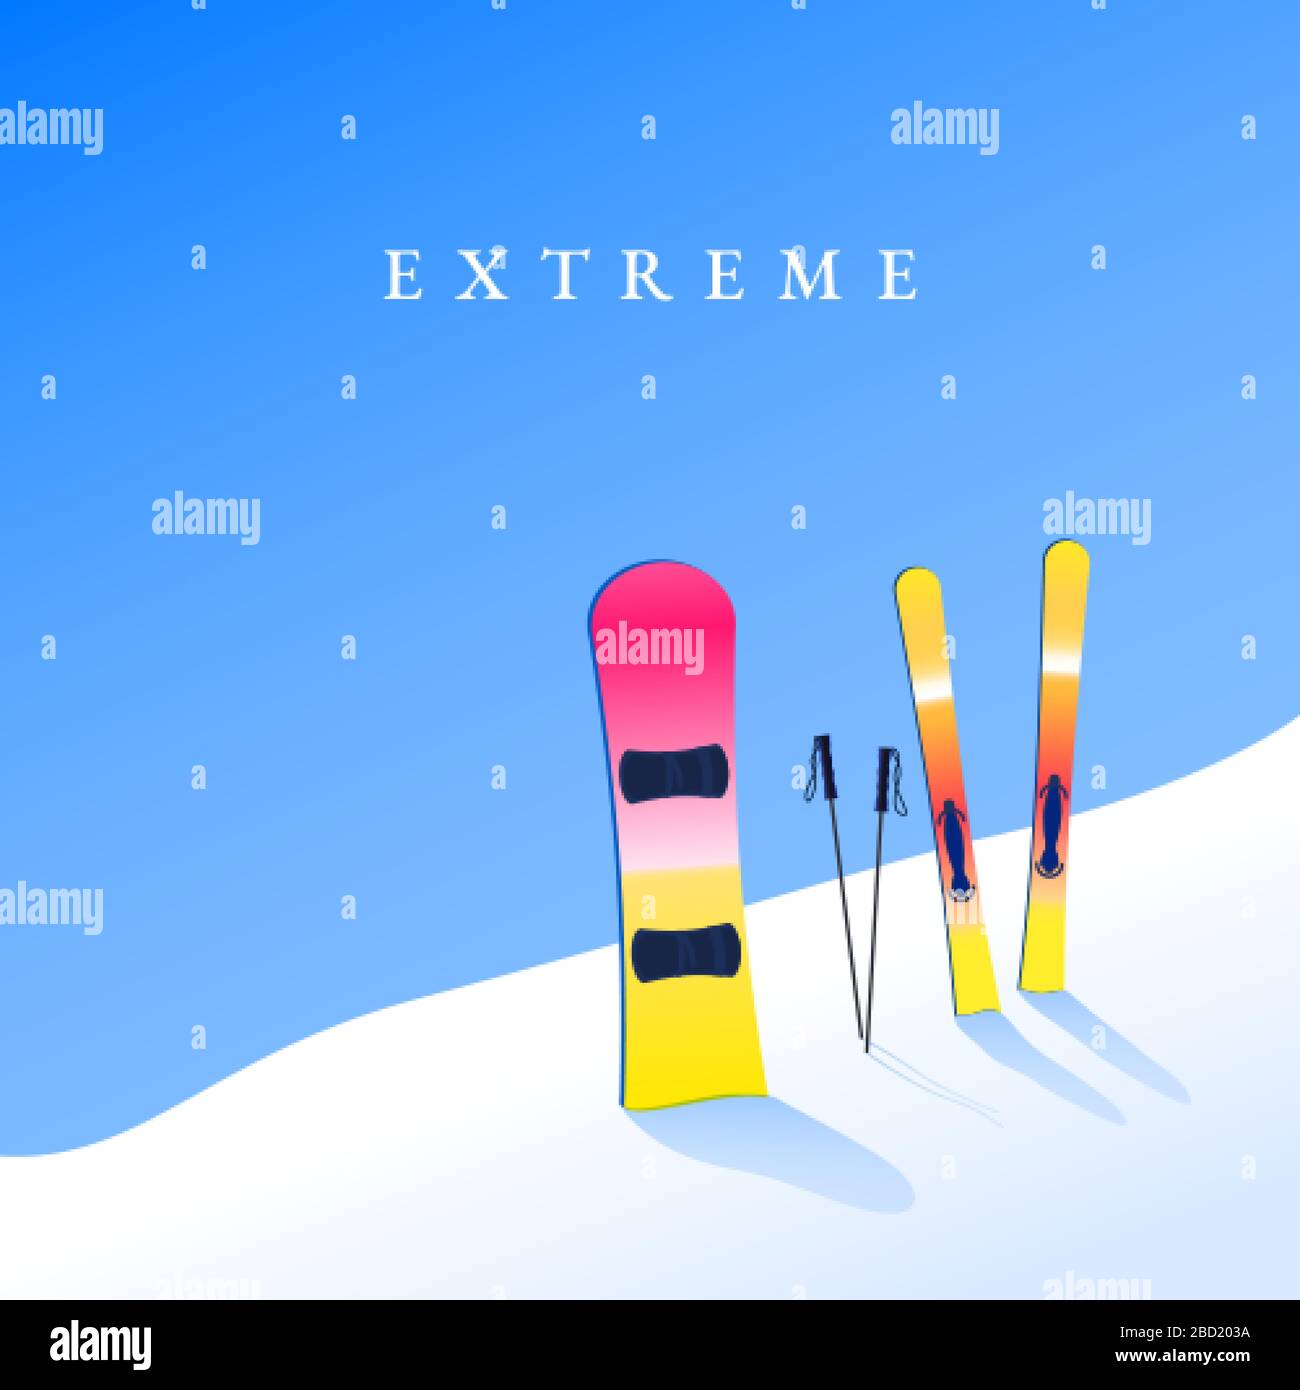 Station de ski. Ski et snowboard sur flanc de colline. Bannière de tourisme extrême. Vecteur Illustration de Vecteur